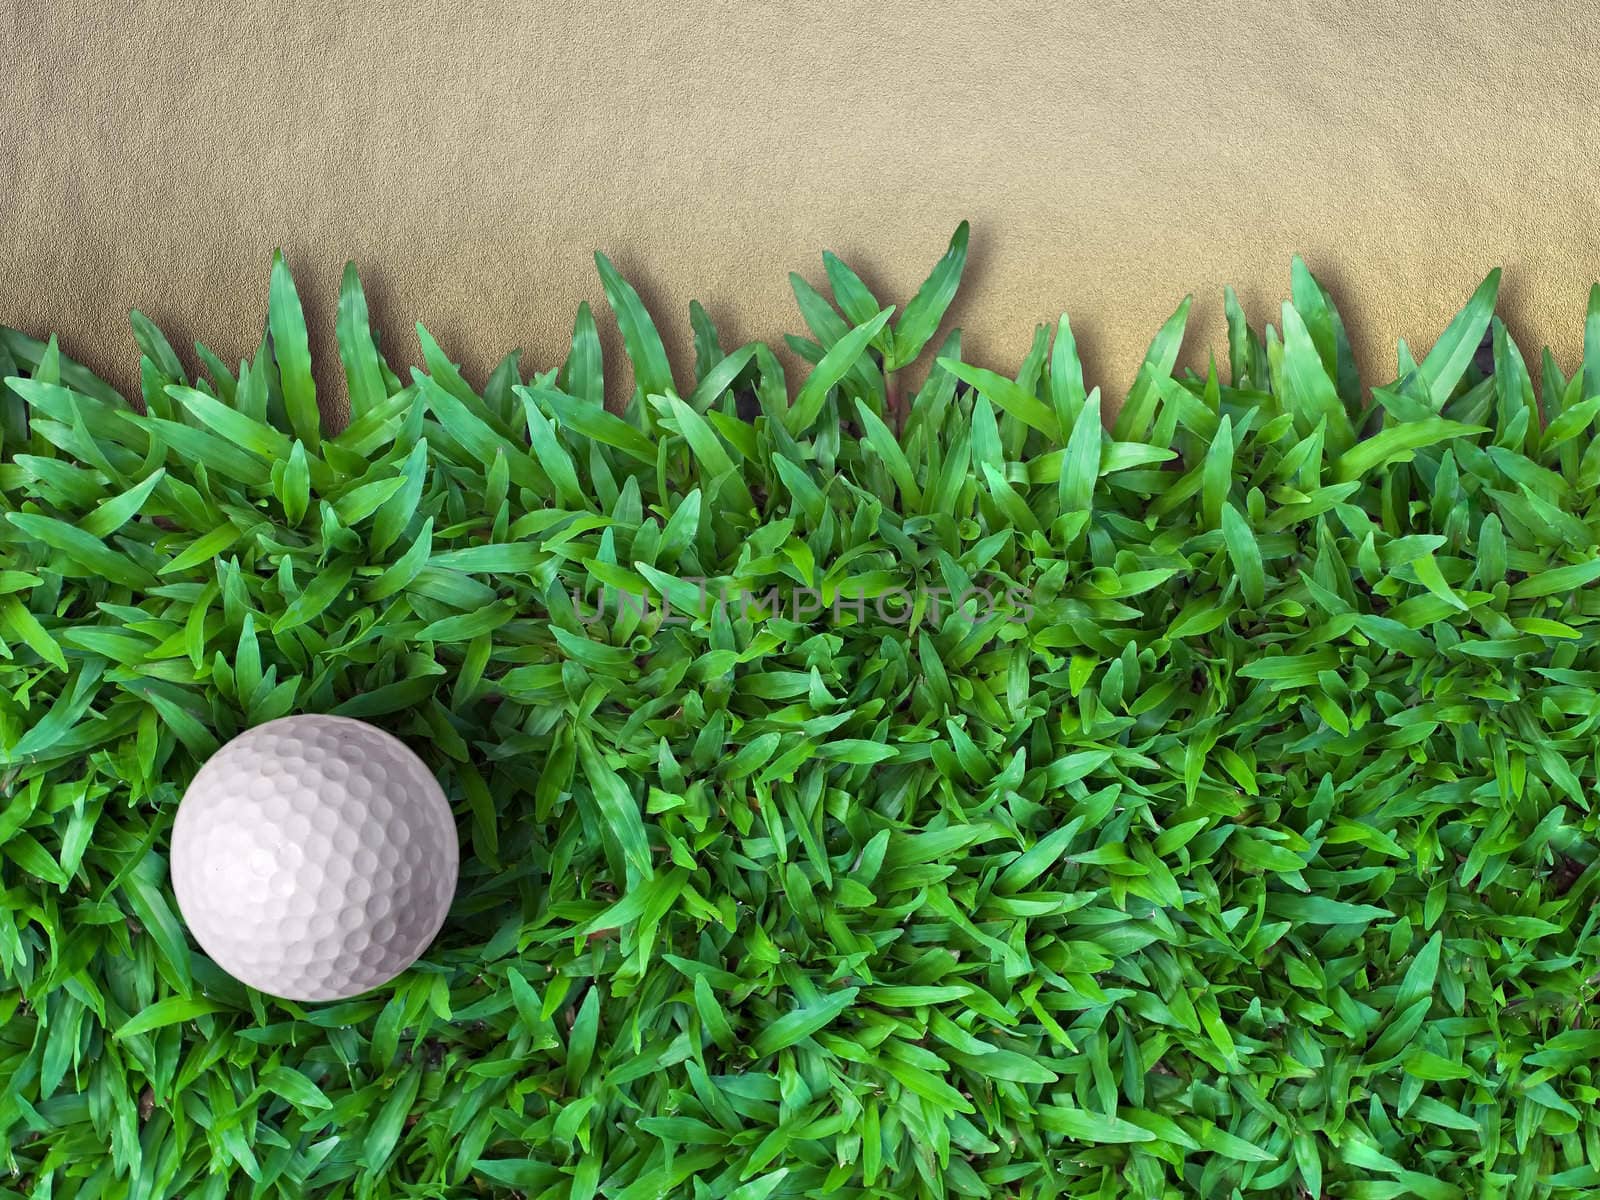 Golf Ball on Green Grass by nuttakit